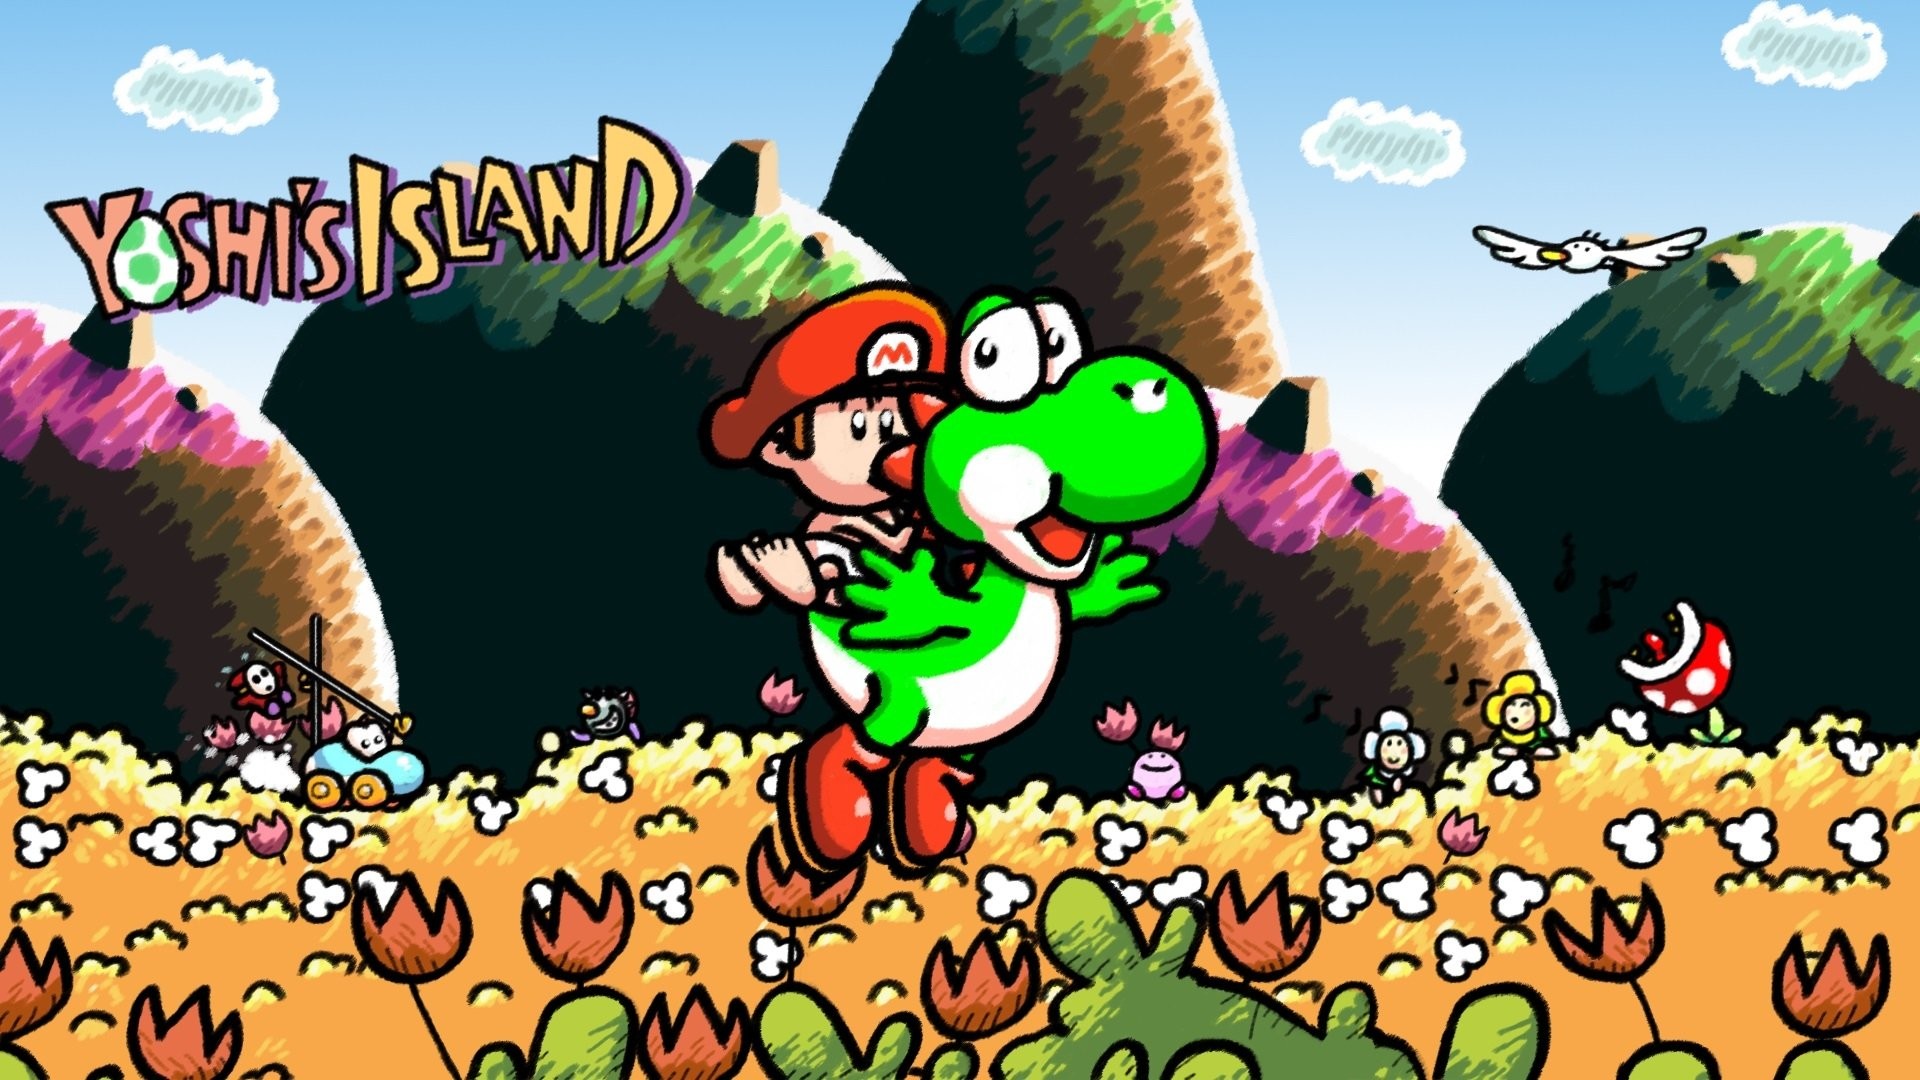 Yoshi island 2. Super Mario World 2 Yoshi's Island. Super Mario World 2 - Yoshi's Island Snes. Mario Yoshi Island 3. Super Mario World 2 остров Йоши.